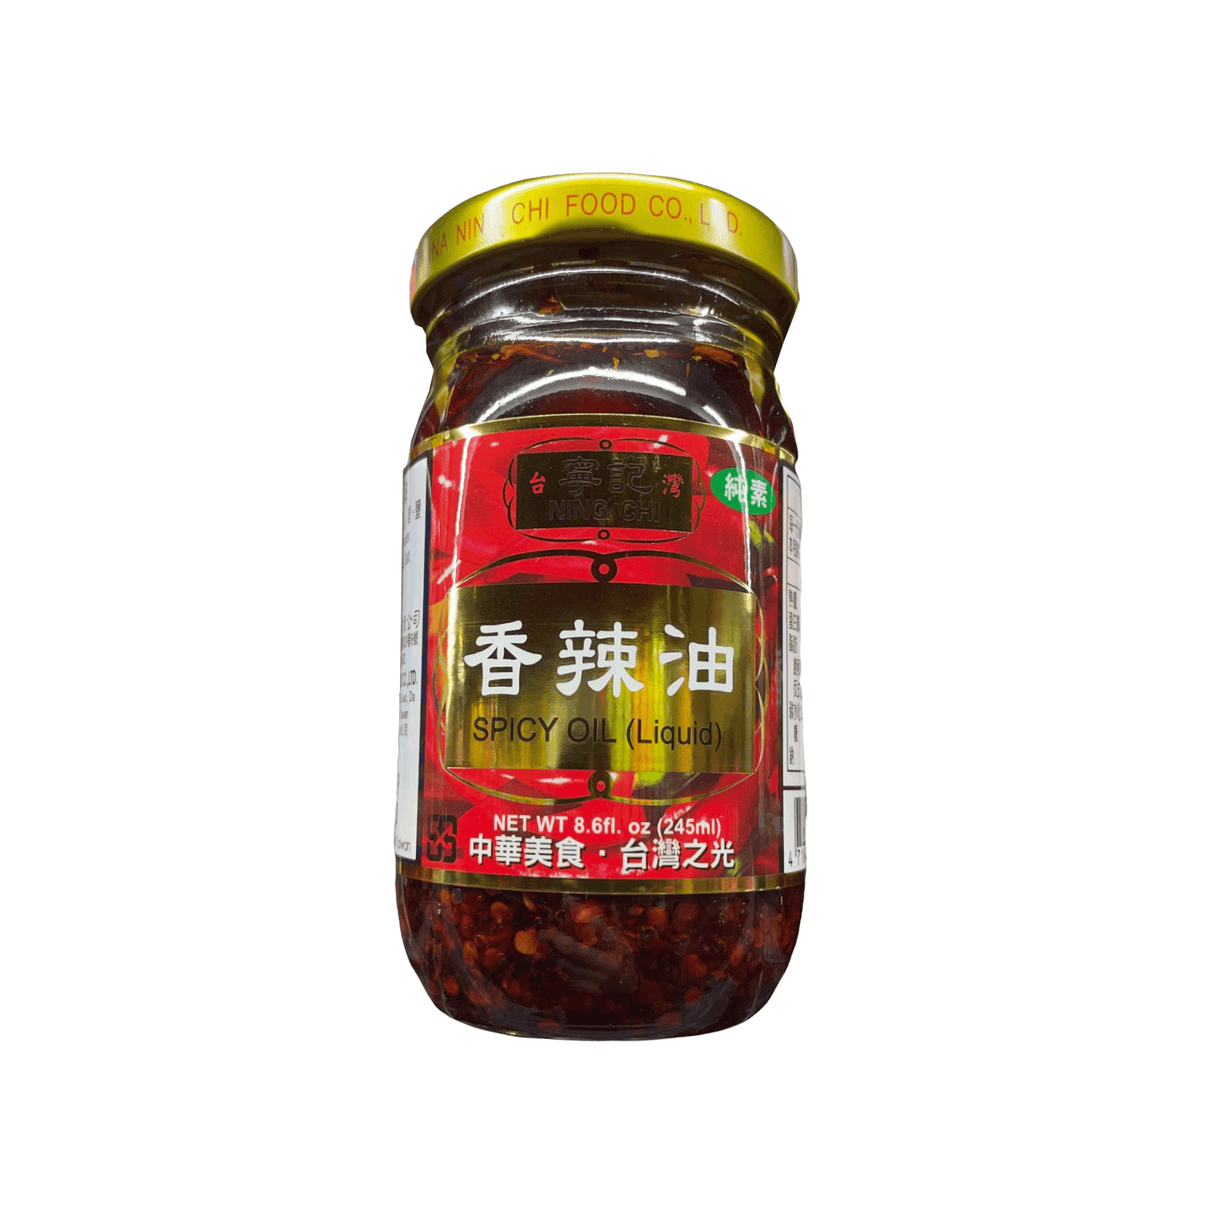 Ning Chi Spicy Oil (Liquid)